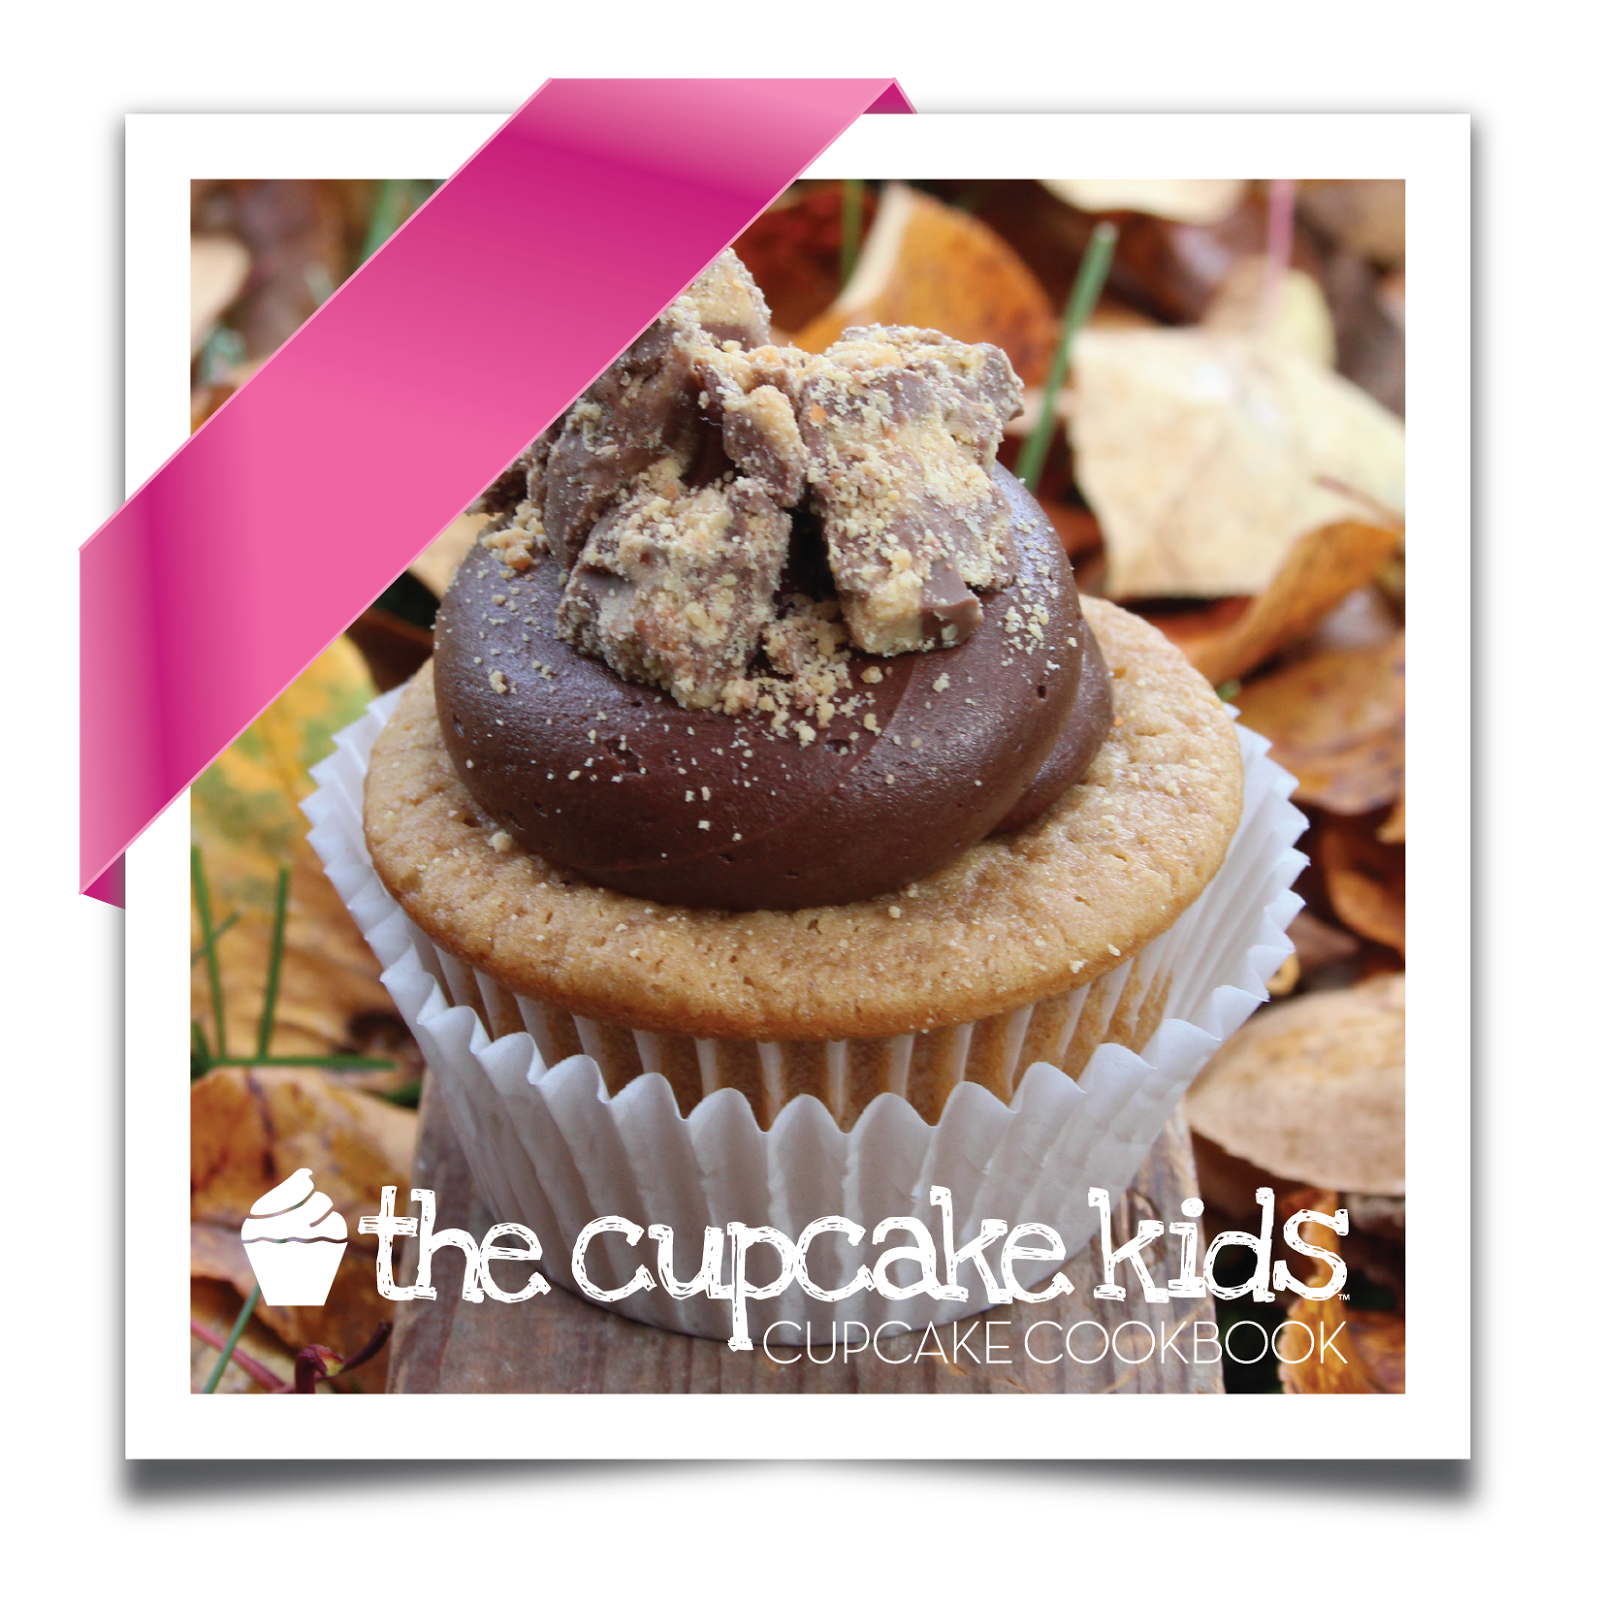 The Cupcake Kids Cookbook